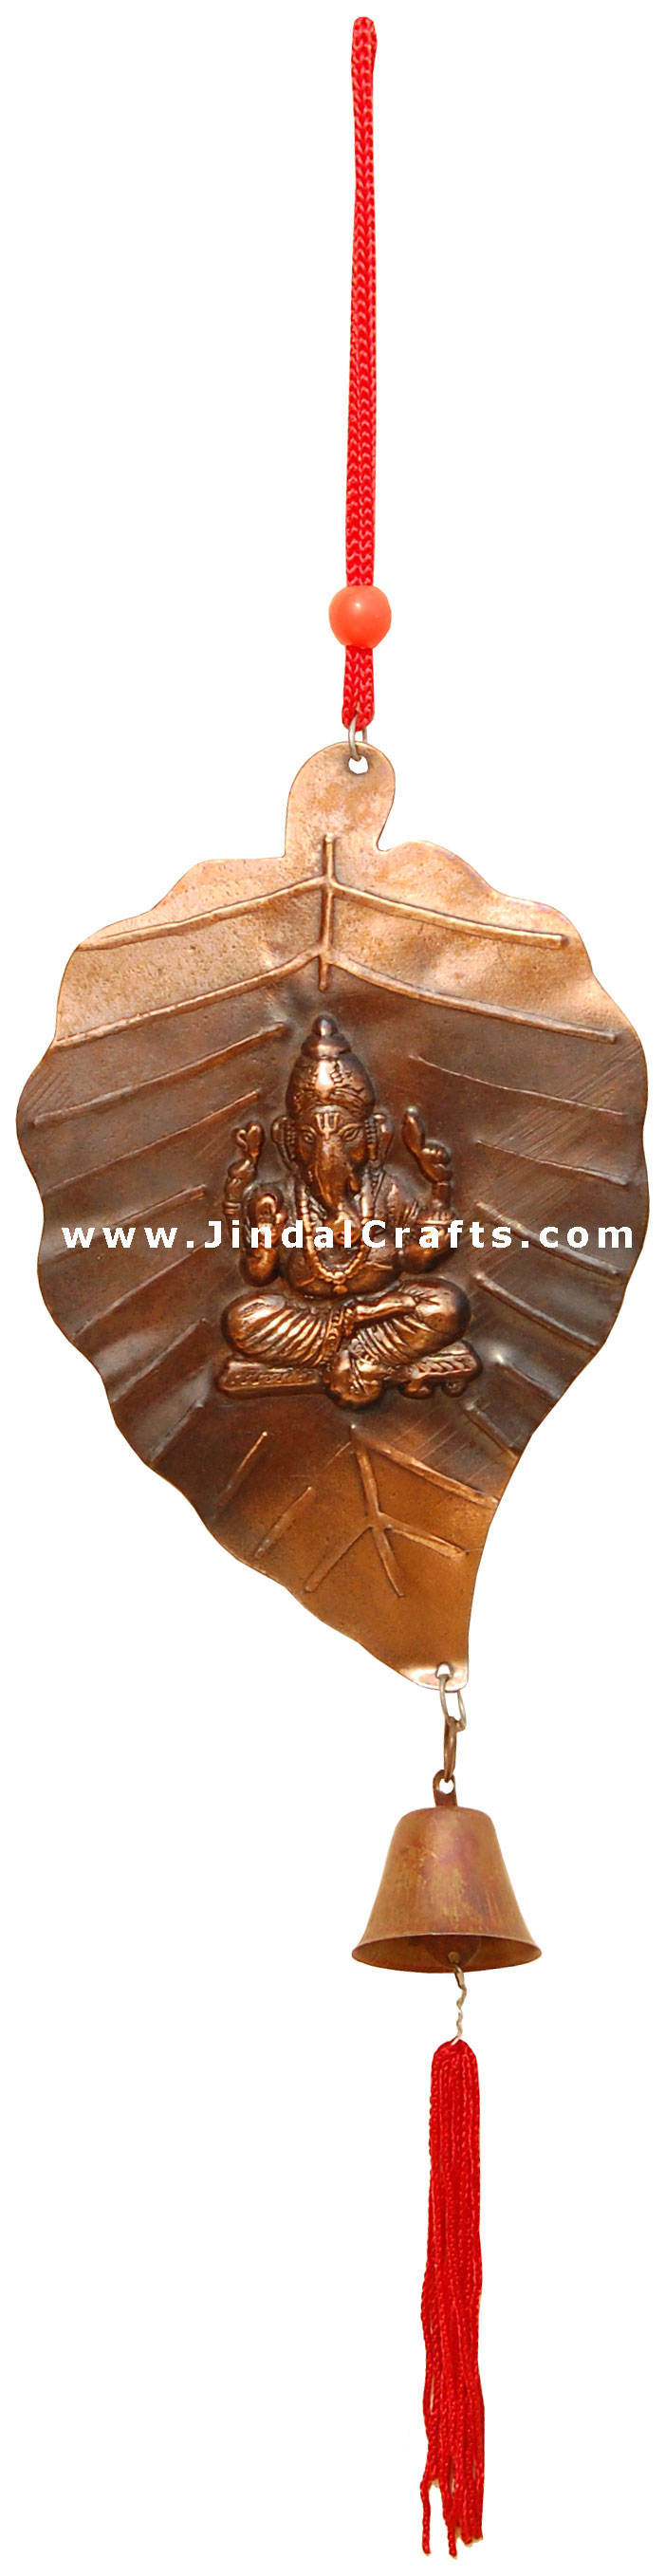 Lord Ganesha Hanging - Metal made Hindu Artifact